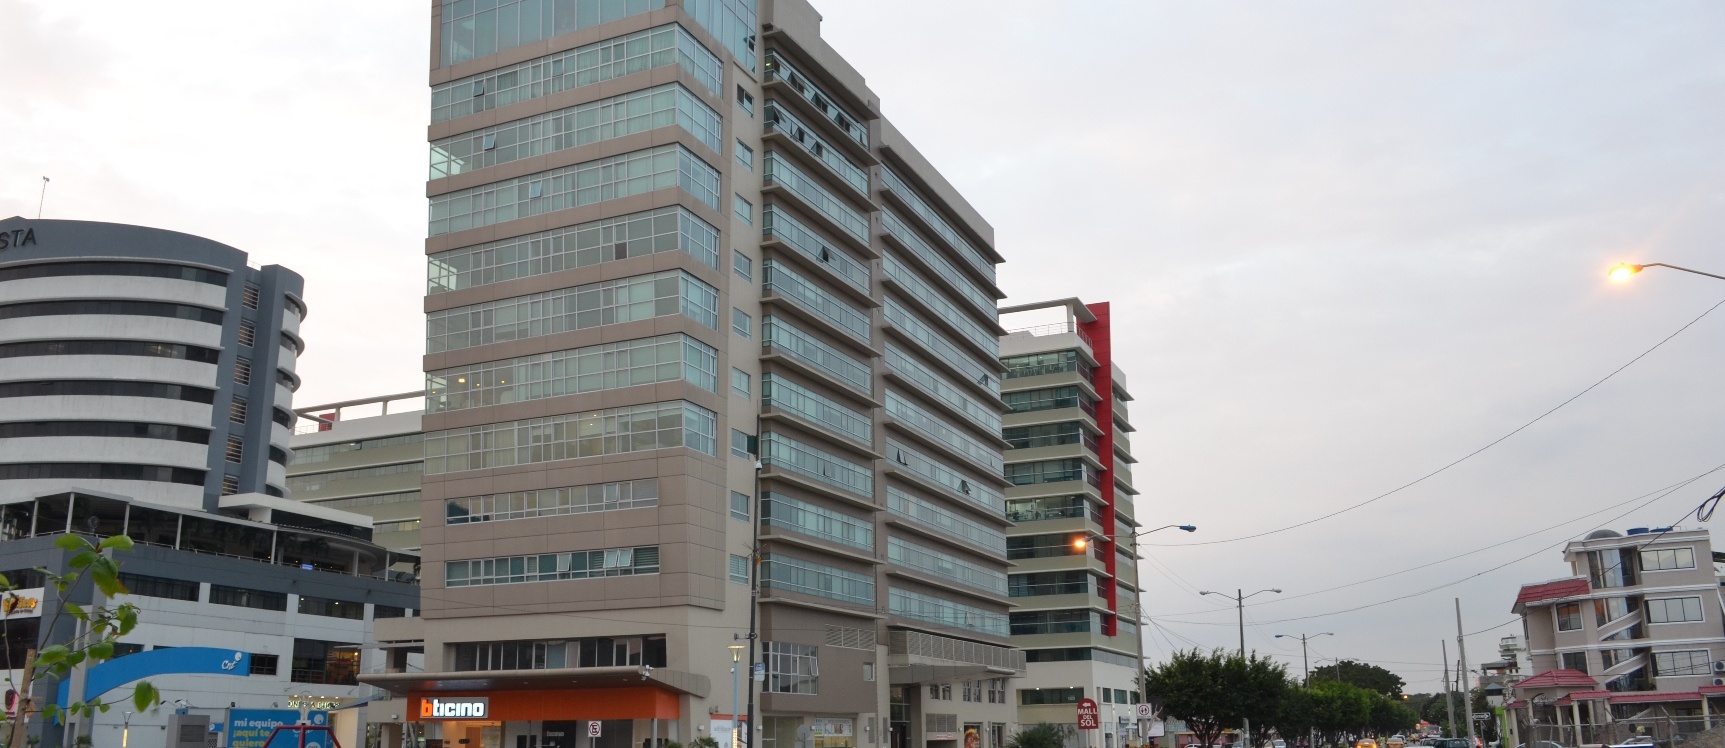 GeoBienes - Departamento en venta en edificio Élite Building sector Mall del Sol - Plusvalia Guayaquil Casas de venta y alquiler Inmobiliaria Ecuador